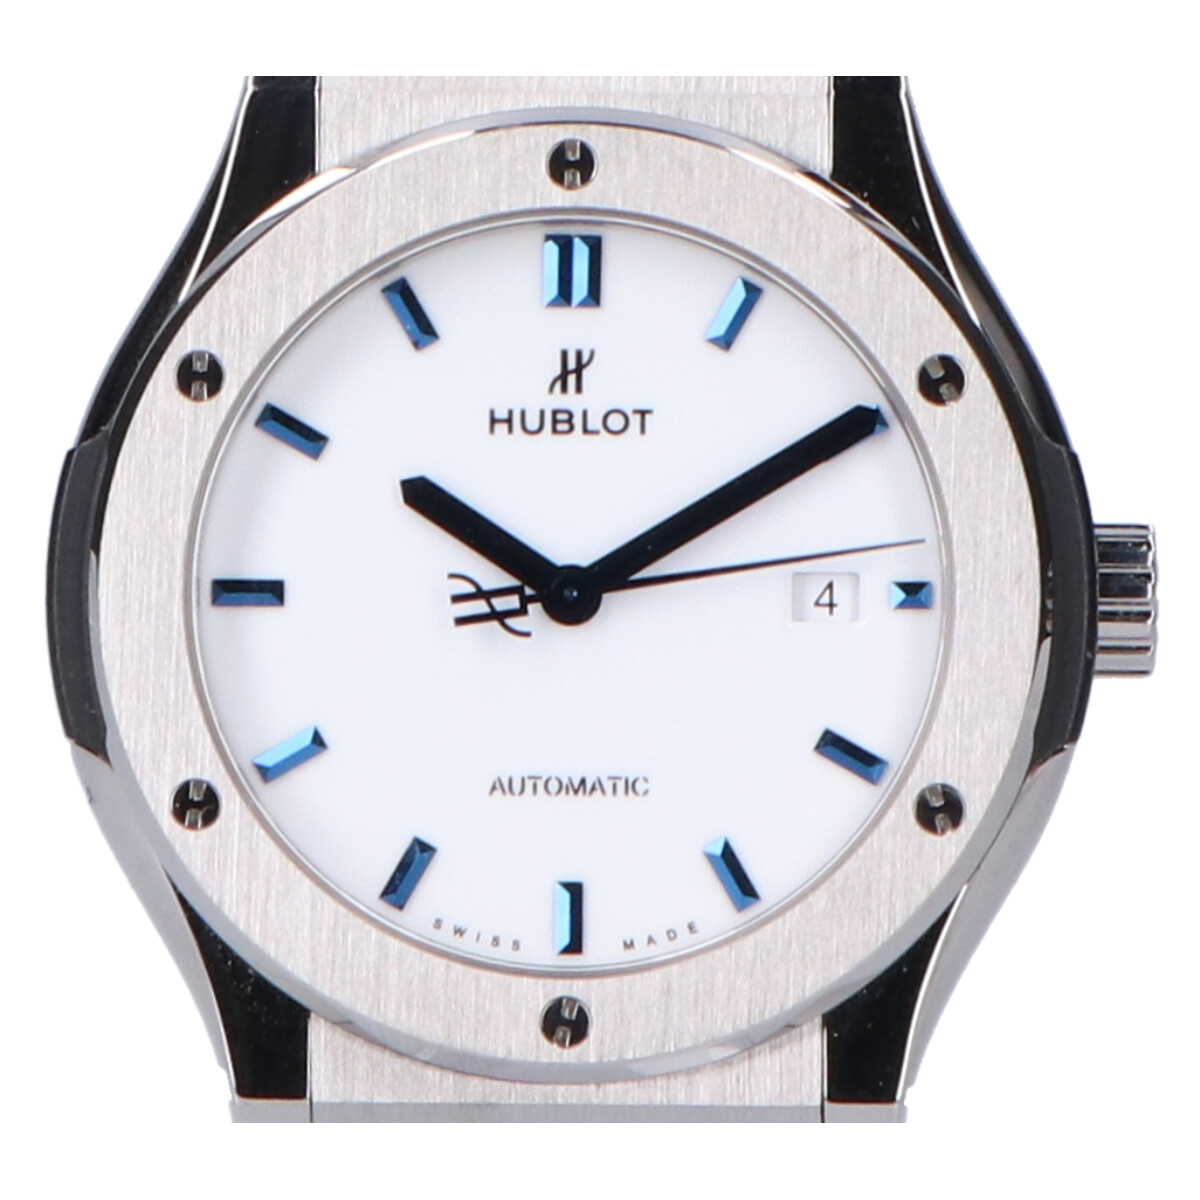 ウブロの542.NX.2210.LR.JPN17 クラシックフュージョン チタニウム ホワイトシャイニーブルー 日本限定 自動巻き腕時計の買取実績です。